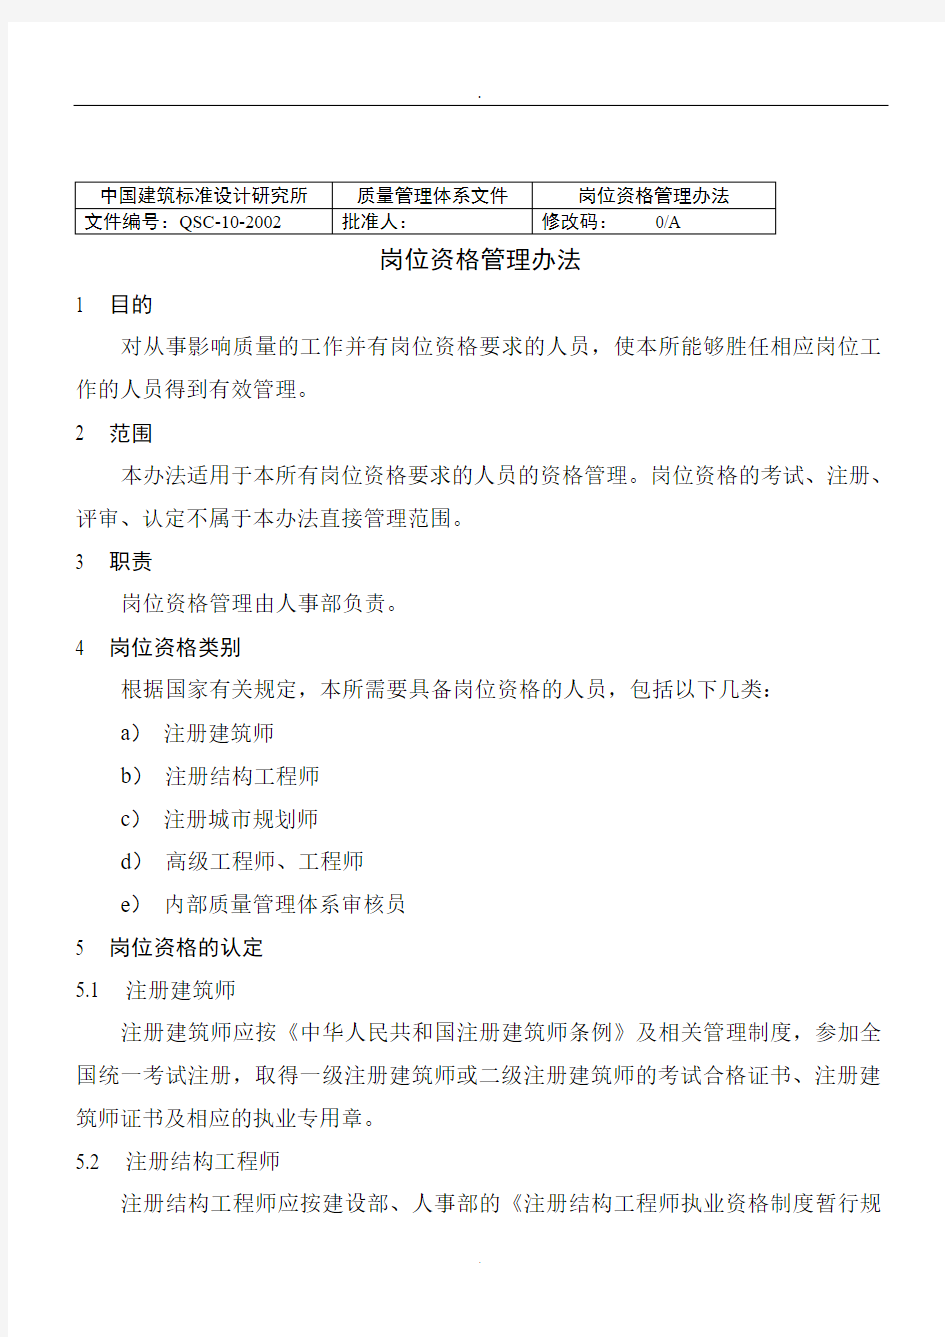 中国建筑标准设计研究所岗位资格管理办法